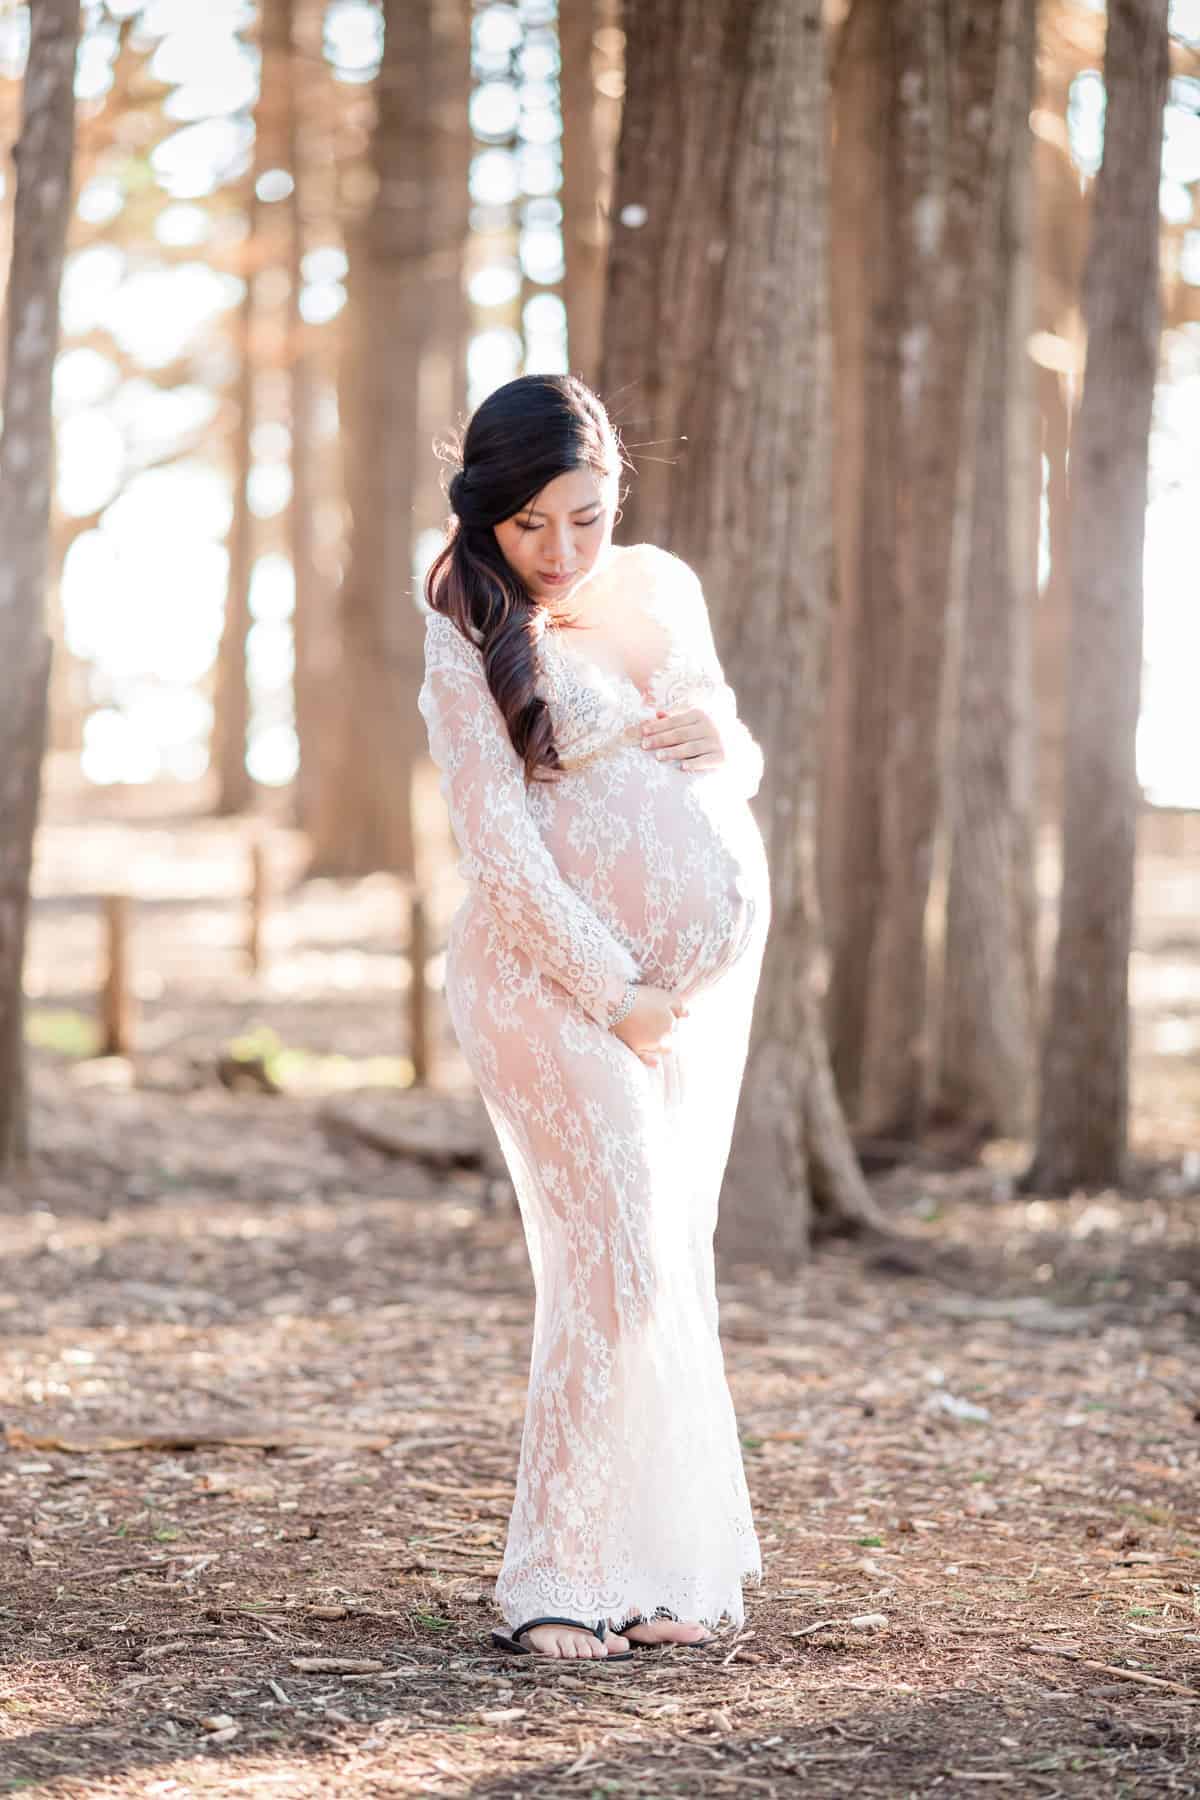 Orlando Maternity Photographer | Waiting on Baby Girl |Orlando Maternity,  Newborn and Family Photographer | Blog |Ashley Rogers Photography